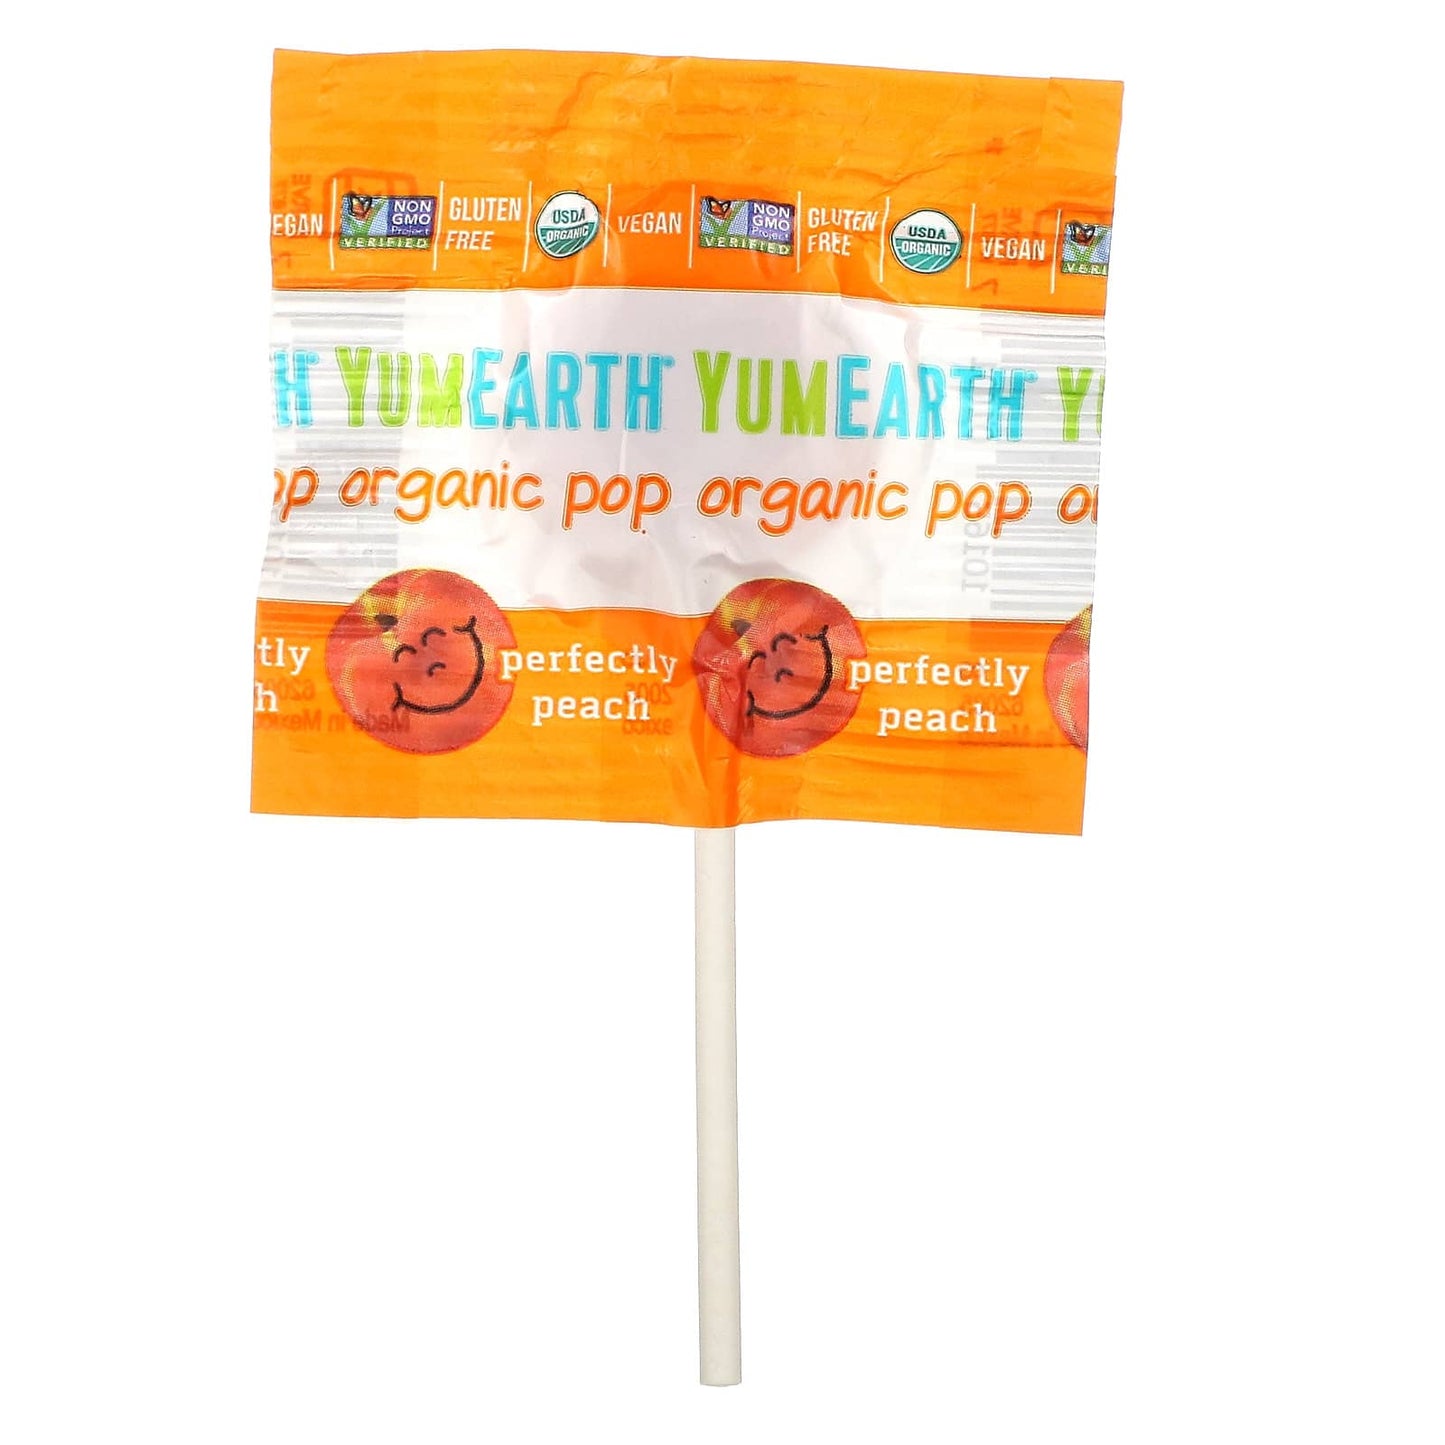 YumEarth, Organic Pops, Favorites, 6 oz (170 g)